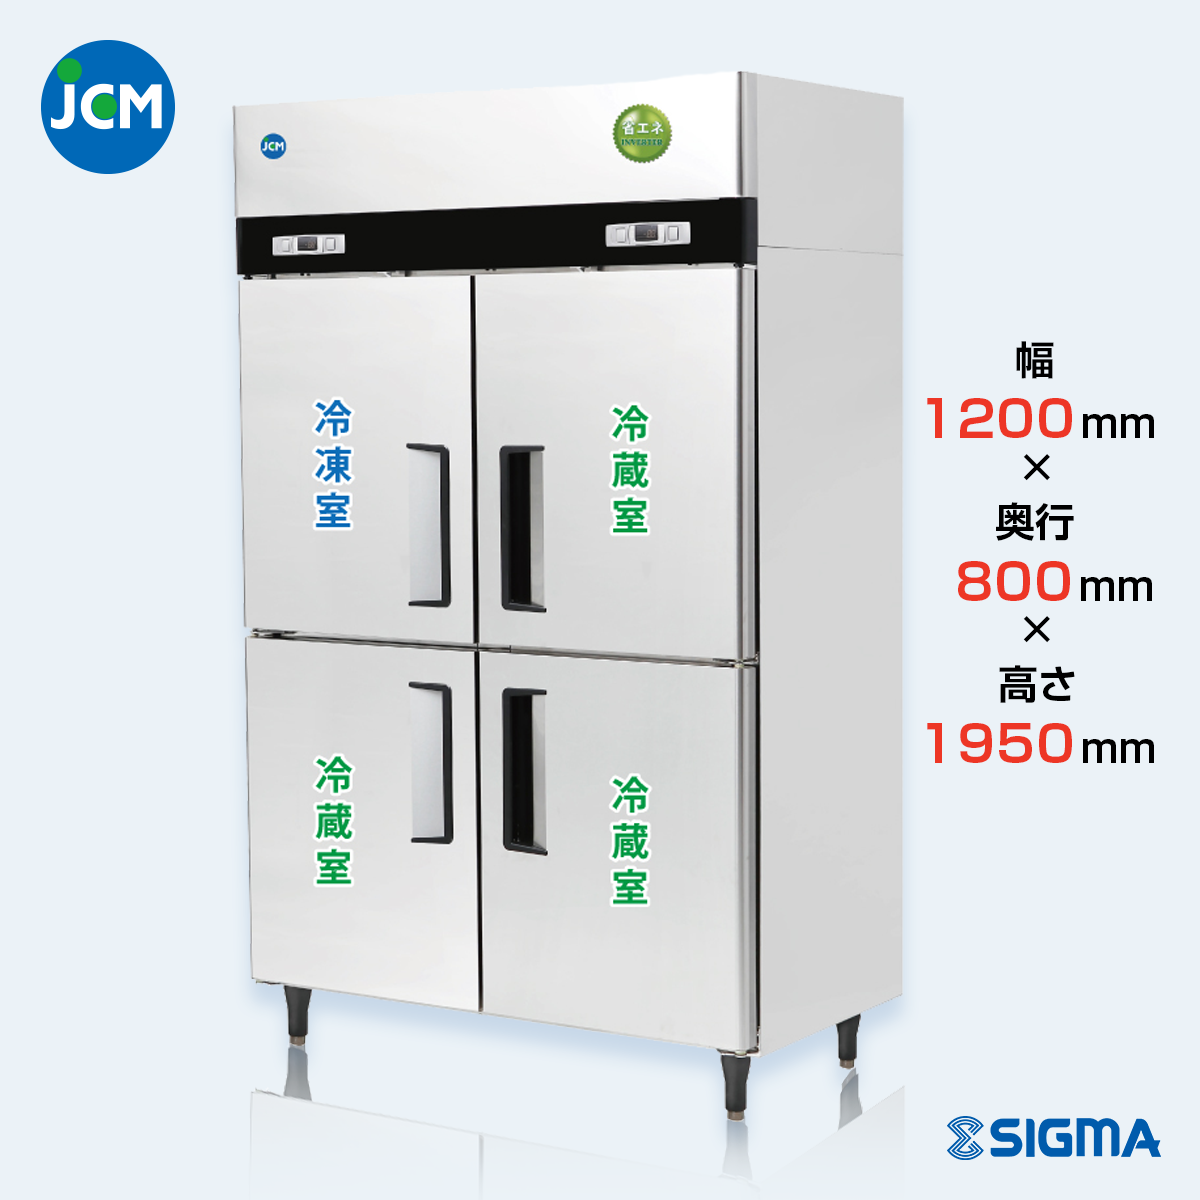 JCMR-1280F1-IN 業務用 縦型冷凍冷蔵庫（冷凍1 冷蔵3）／幅1200×奥行800×高さ1950mm